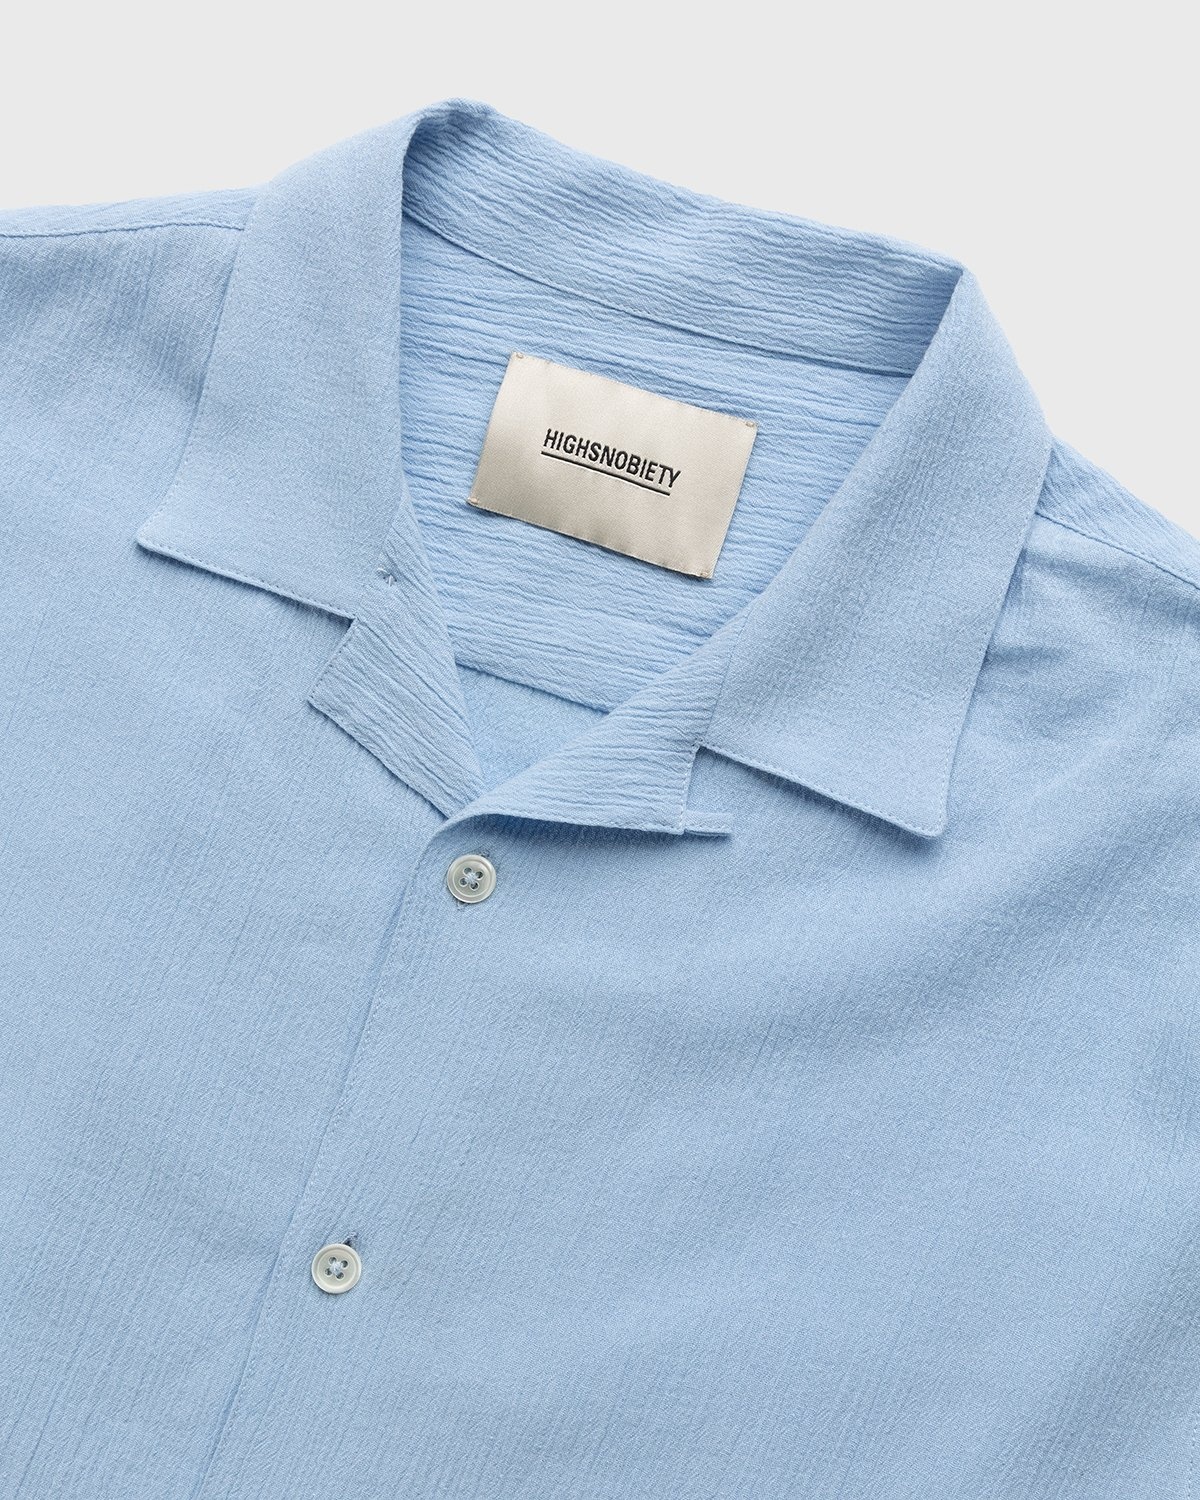 Highsnobiety – Crepe Short Sleeve Shirt Sky Blue - Shortsleeve Shirts - Blue - Image 3